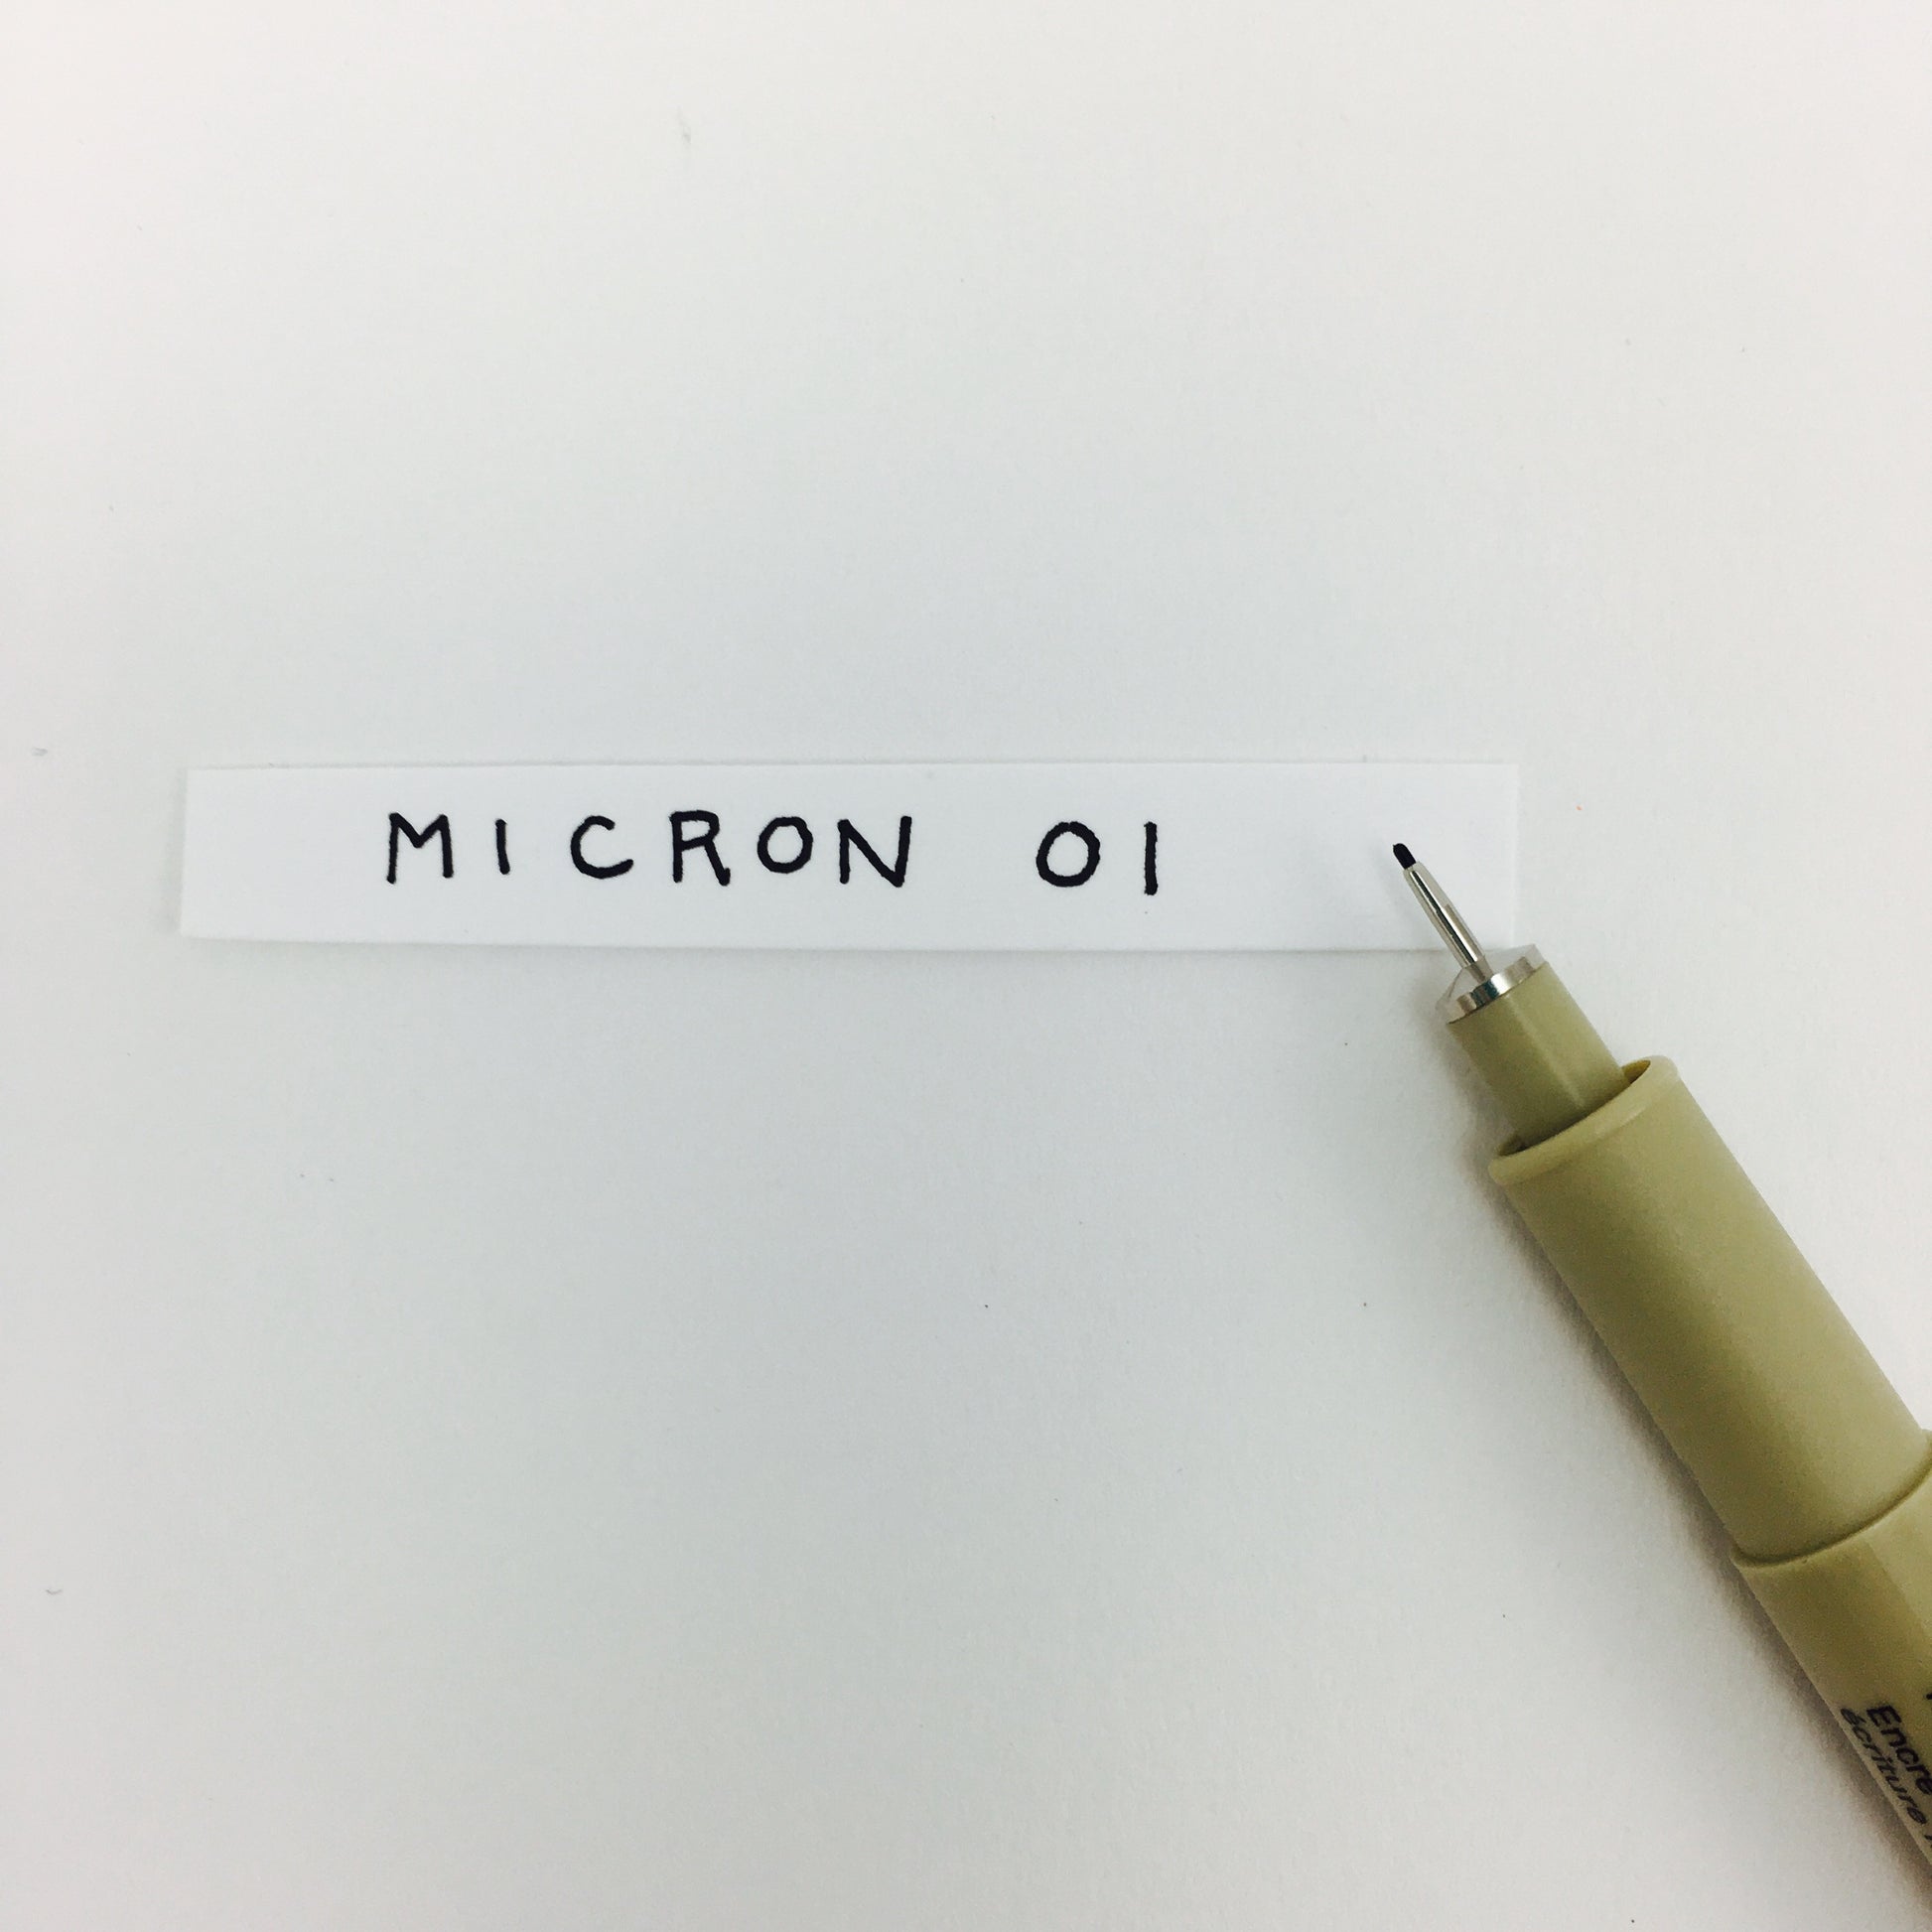  Sakura Pigma Micron Drawing Pen Set, Black fineliner